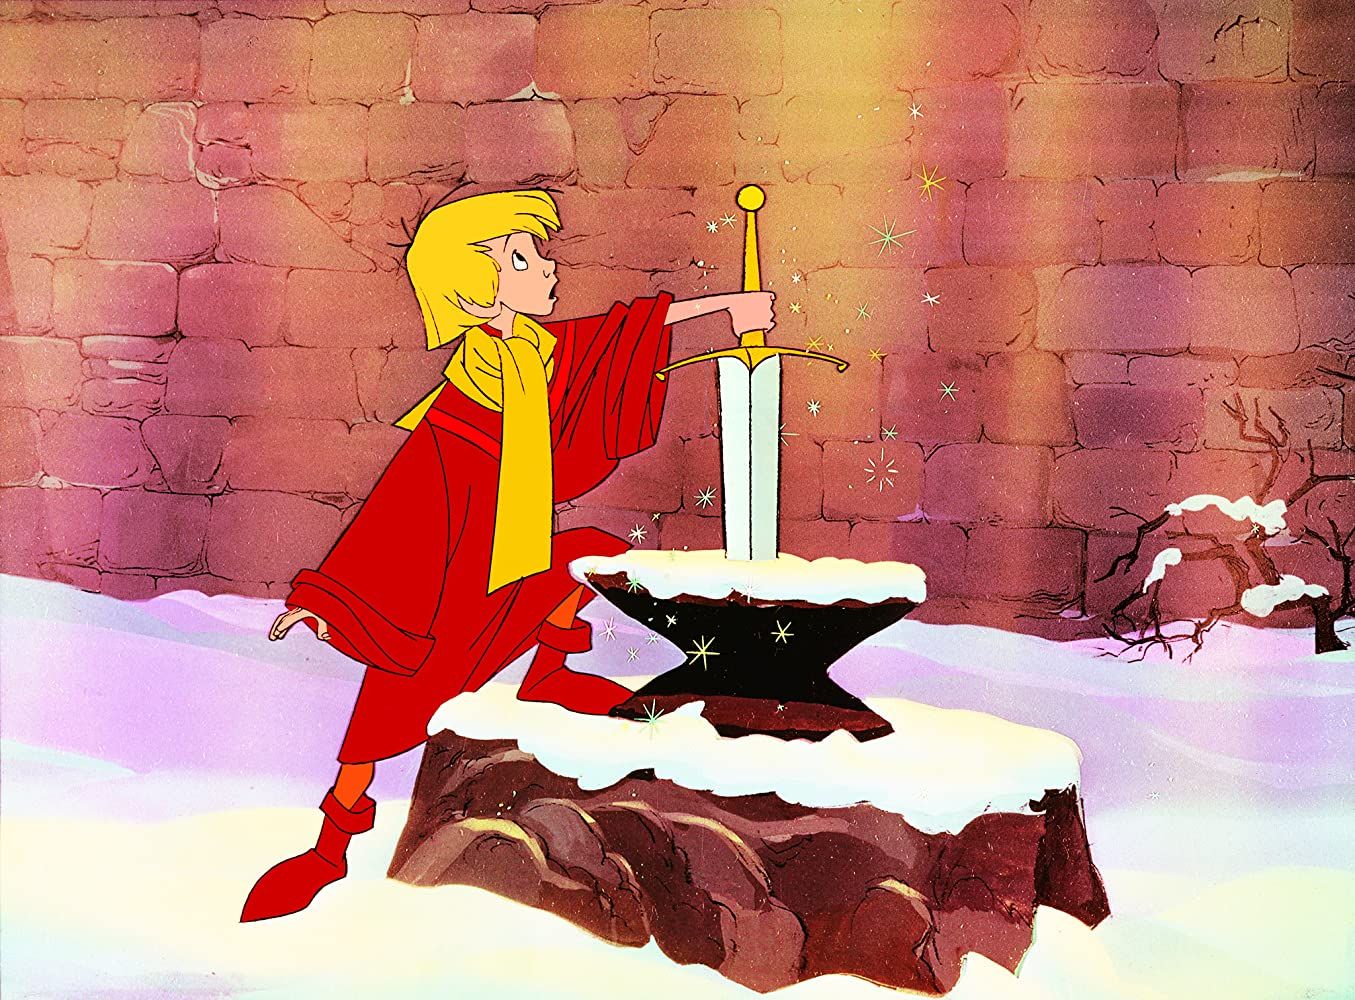 La espada en la piedra de Disney sigue siendo una de las mejores adaptaciones del Rey Arturo